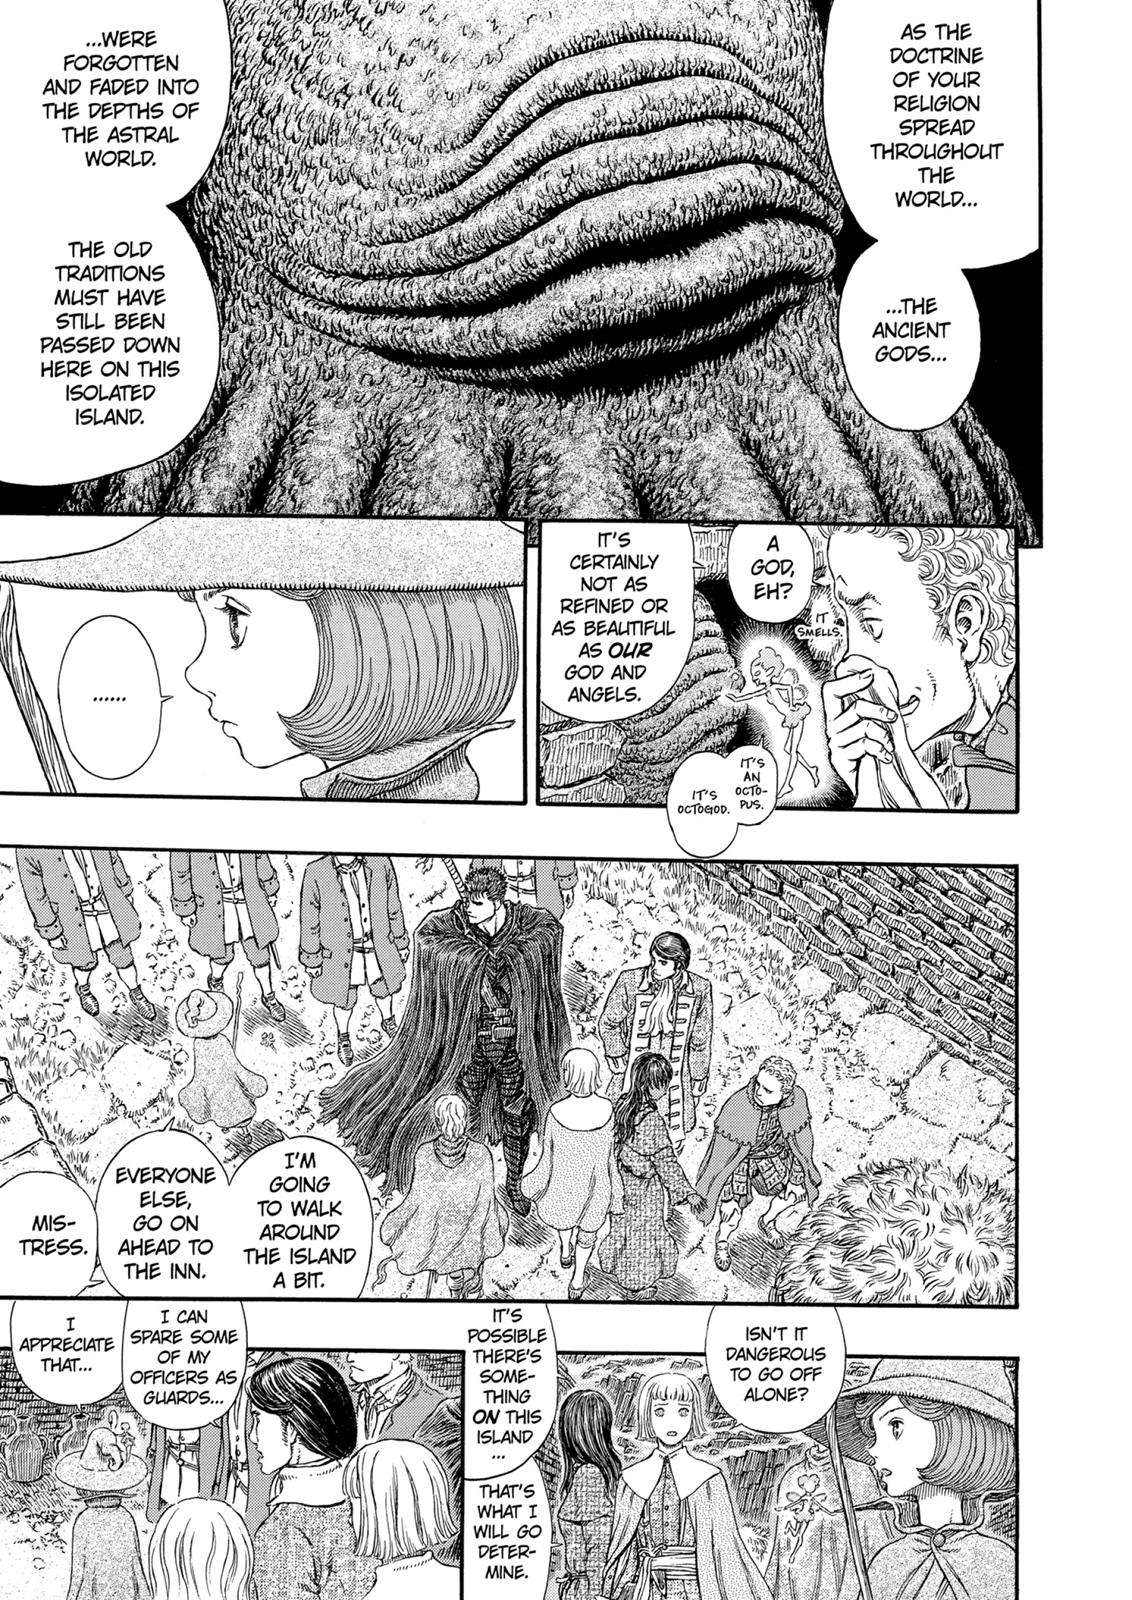 Berserk Manga Chapter 312 image 06